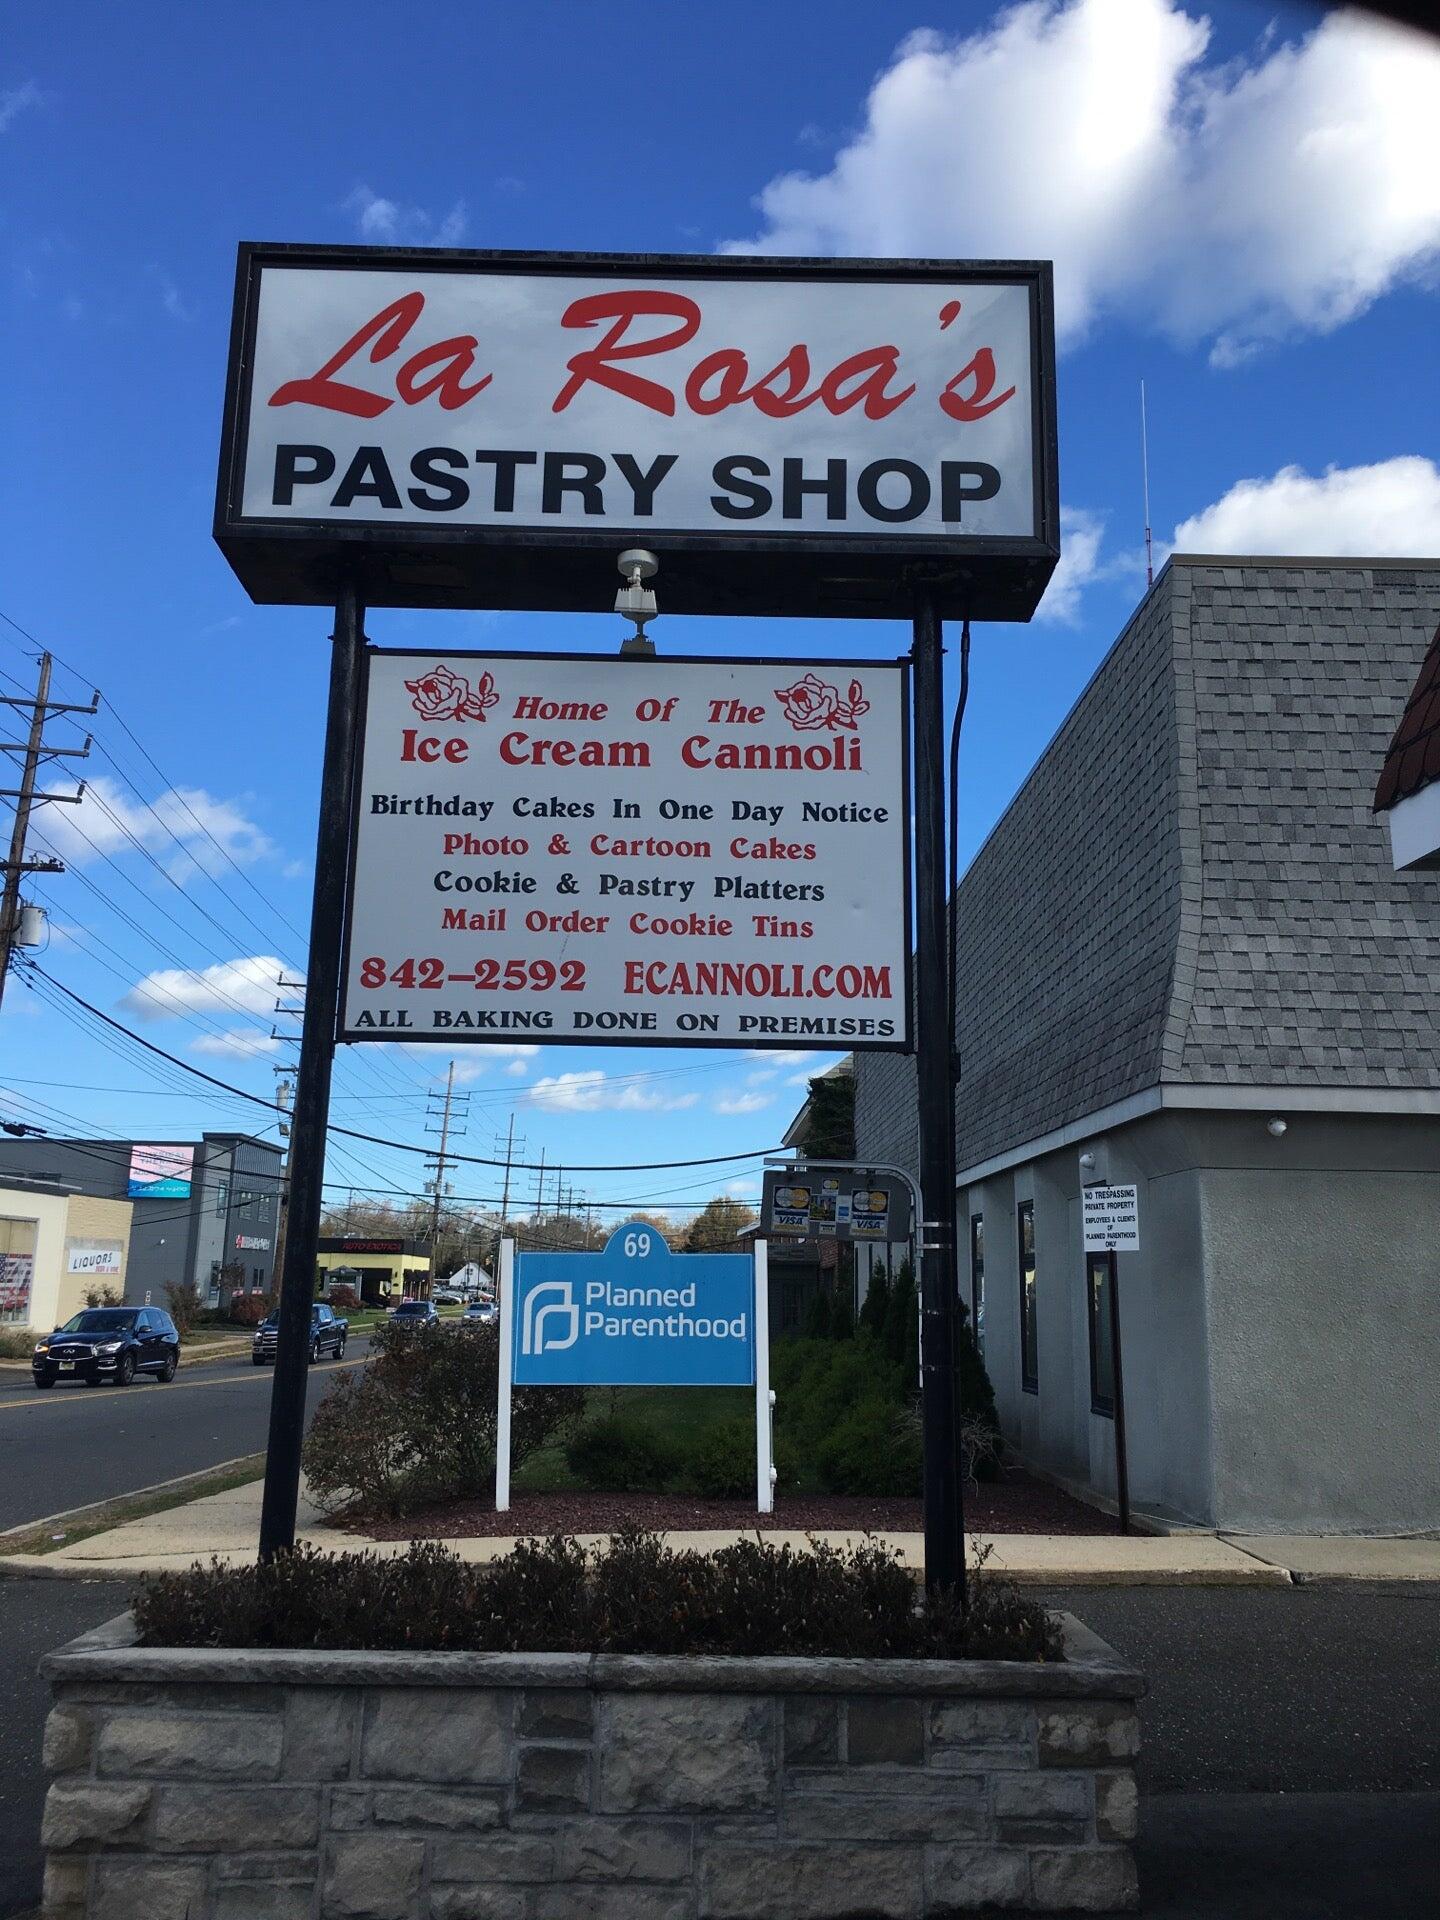 La Rosa's Pastry Shop